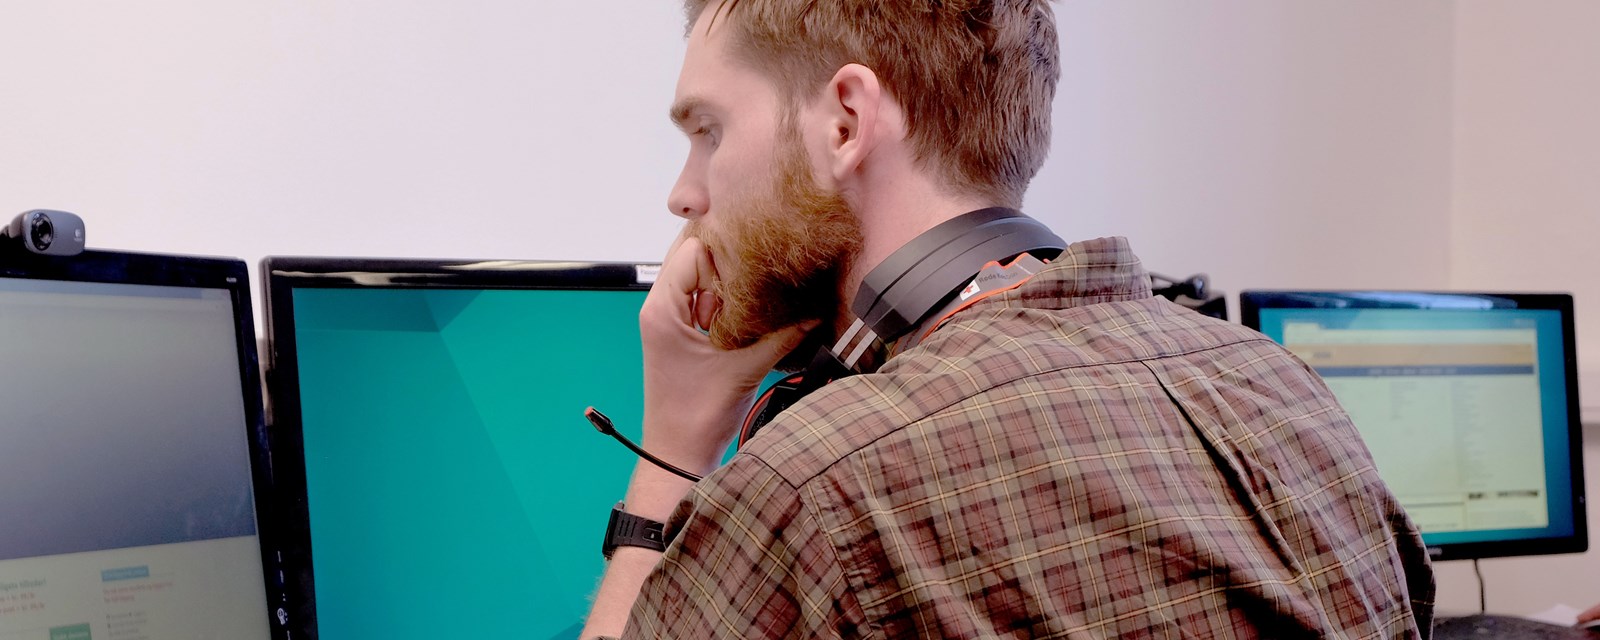 En mann sitter foran tre dataskjermer med et headset rundt nakken